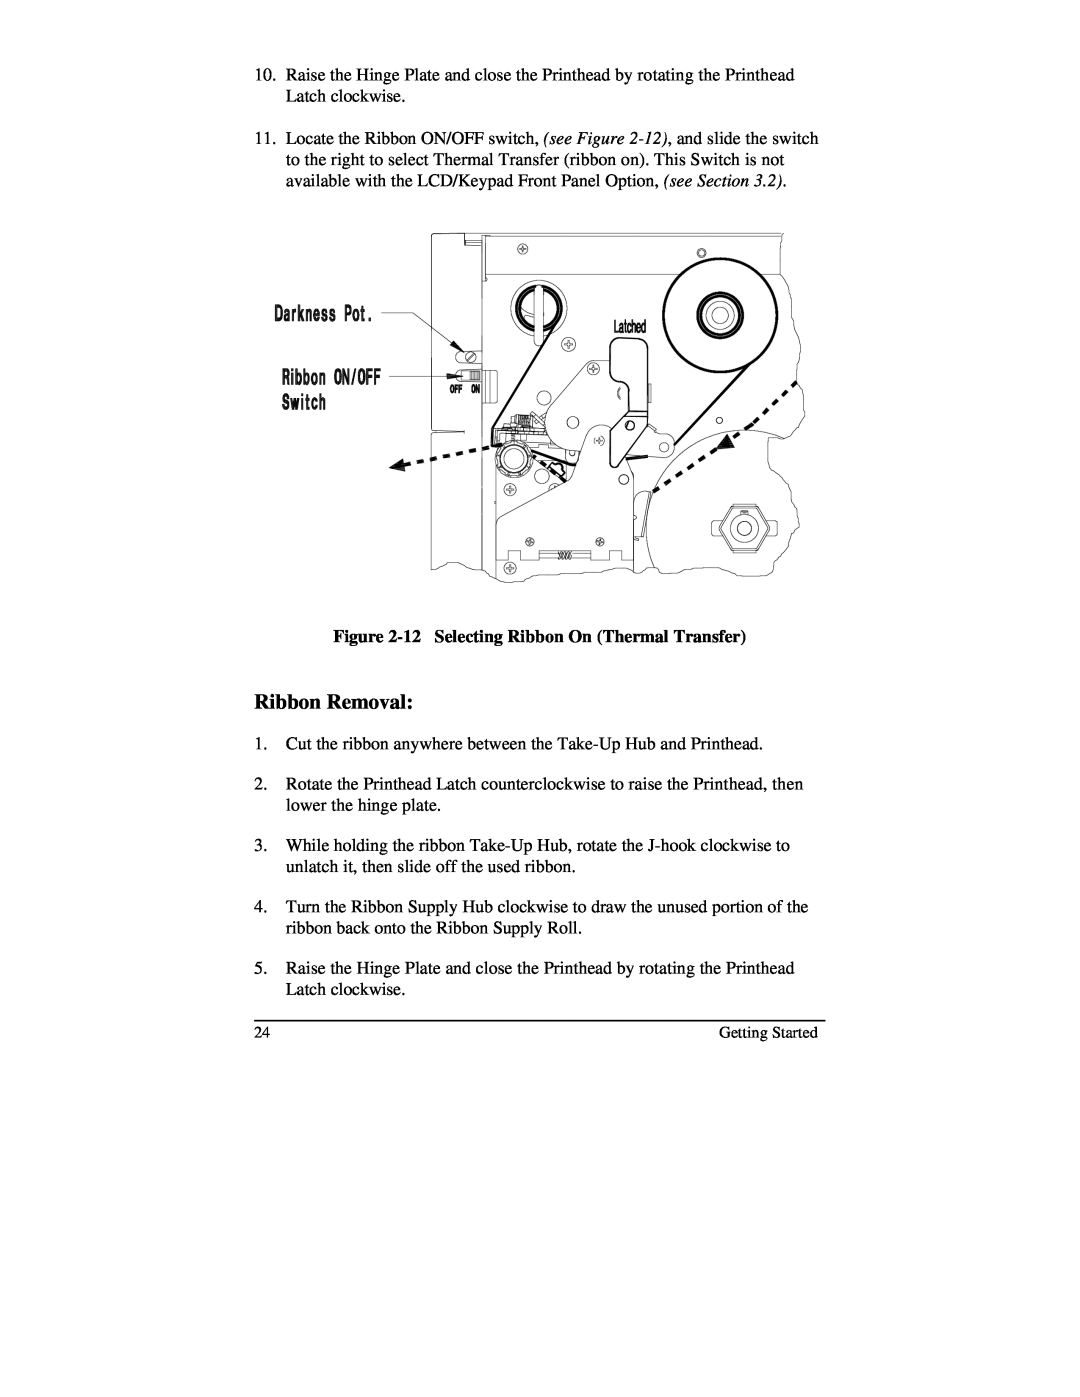 Brady 2024, 2034 manual Ribbon Removal, 12 Selecting Ribbon On Thermal Transfer 